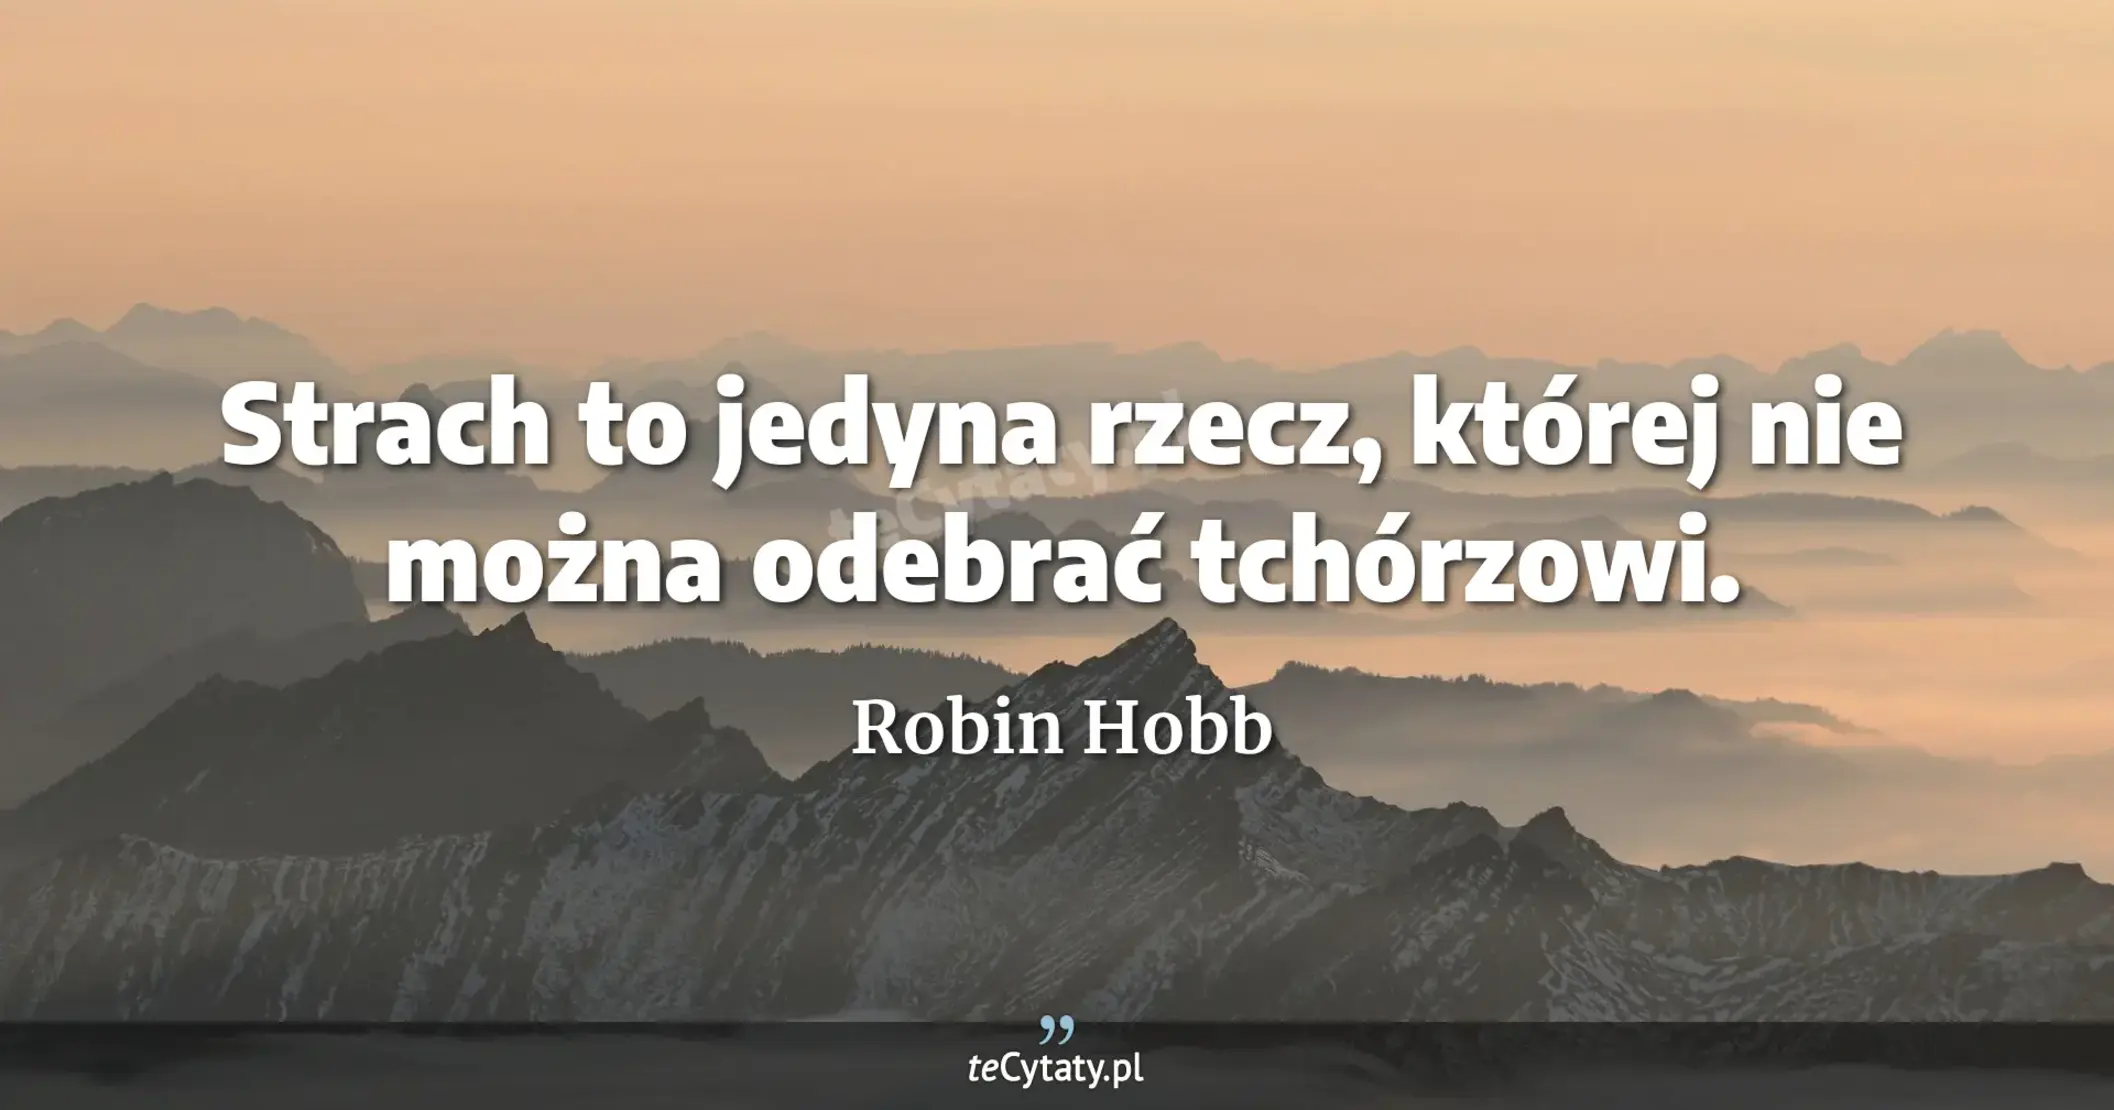 Strach to jedyna rzecz, której nie można odebrać tchórzowi. - Robin Hobb